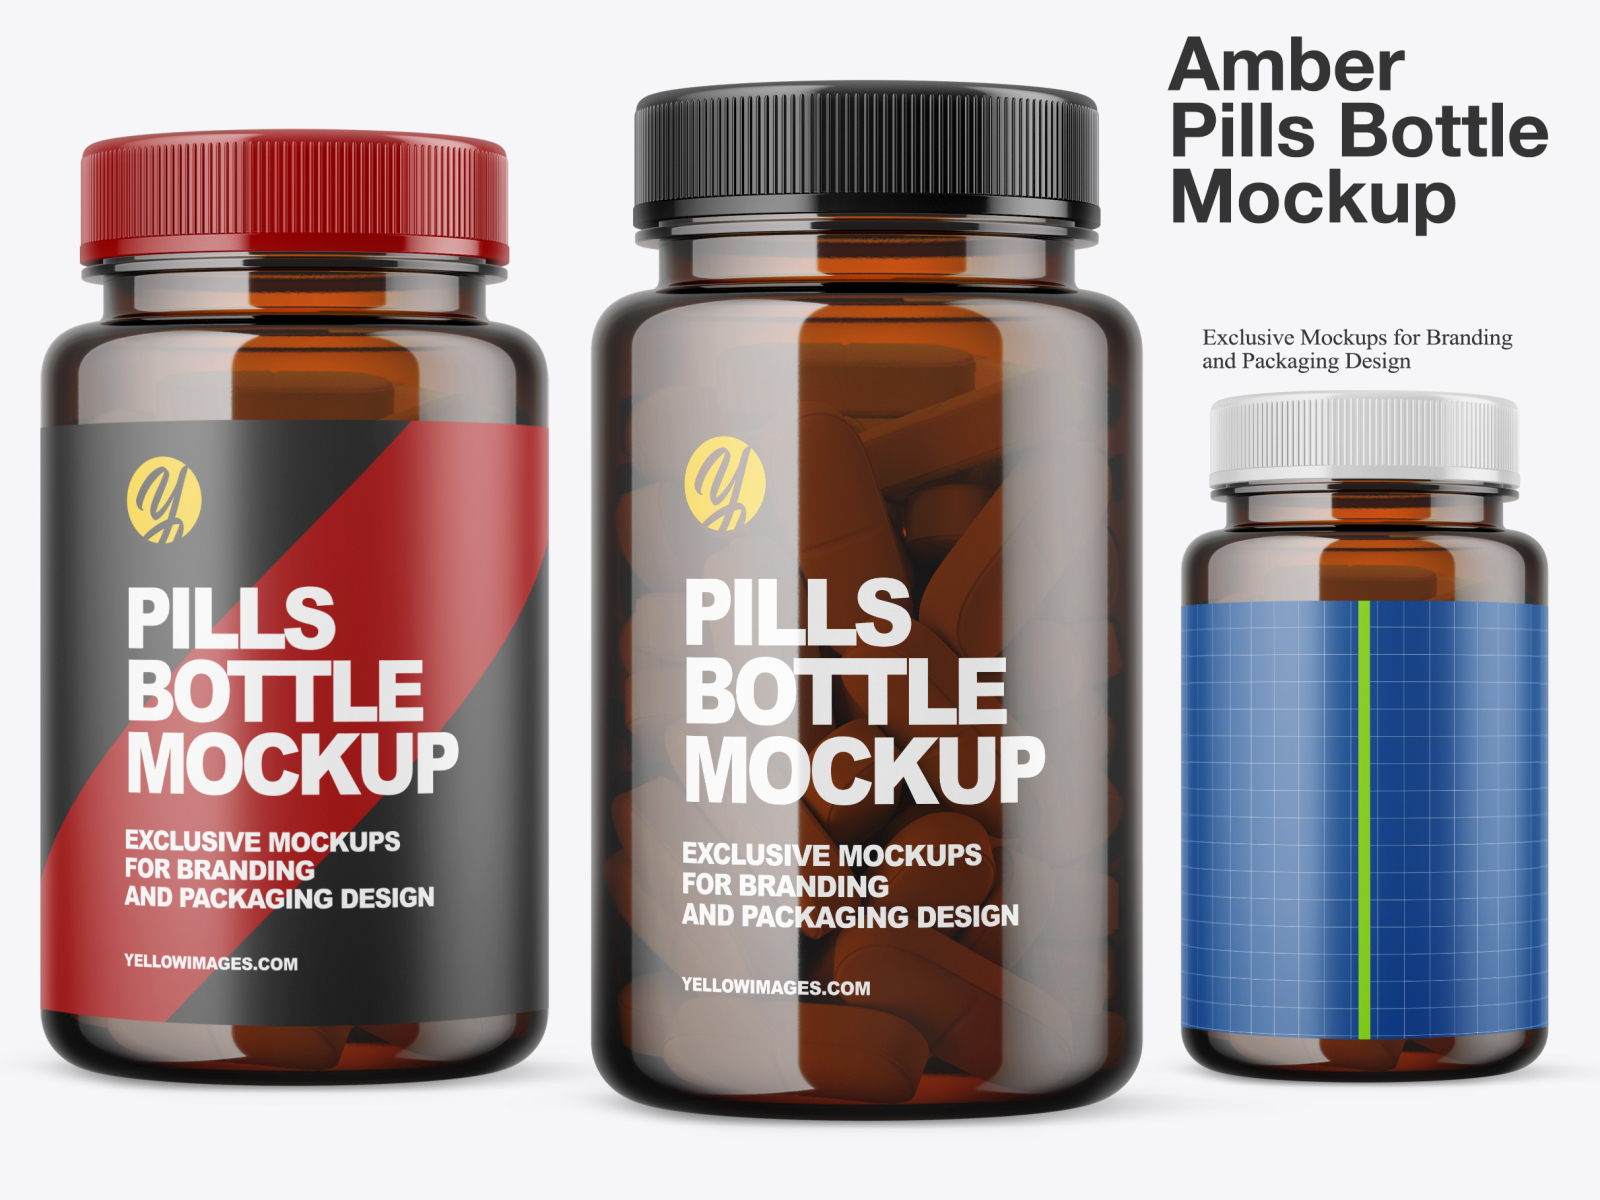 Amber Pills Bottle Mockup By Oleksandr Hlubokyi On Dribbble